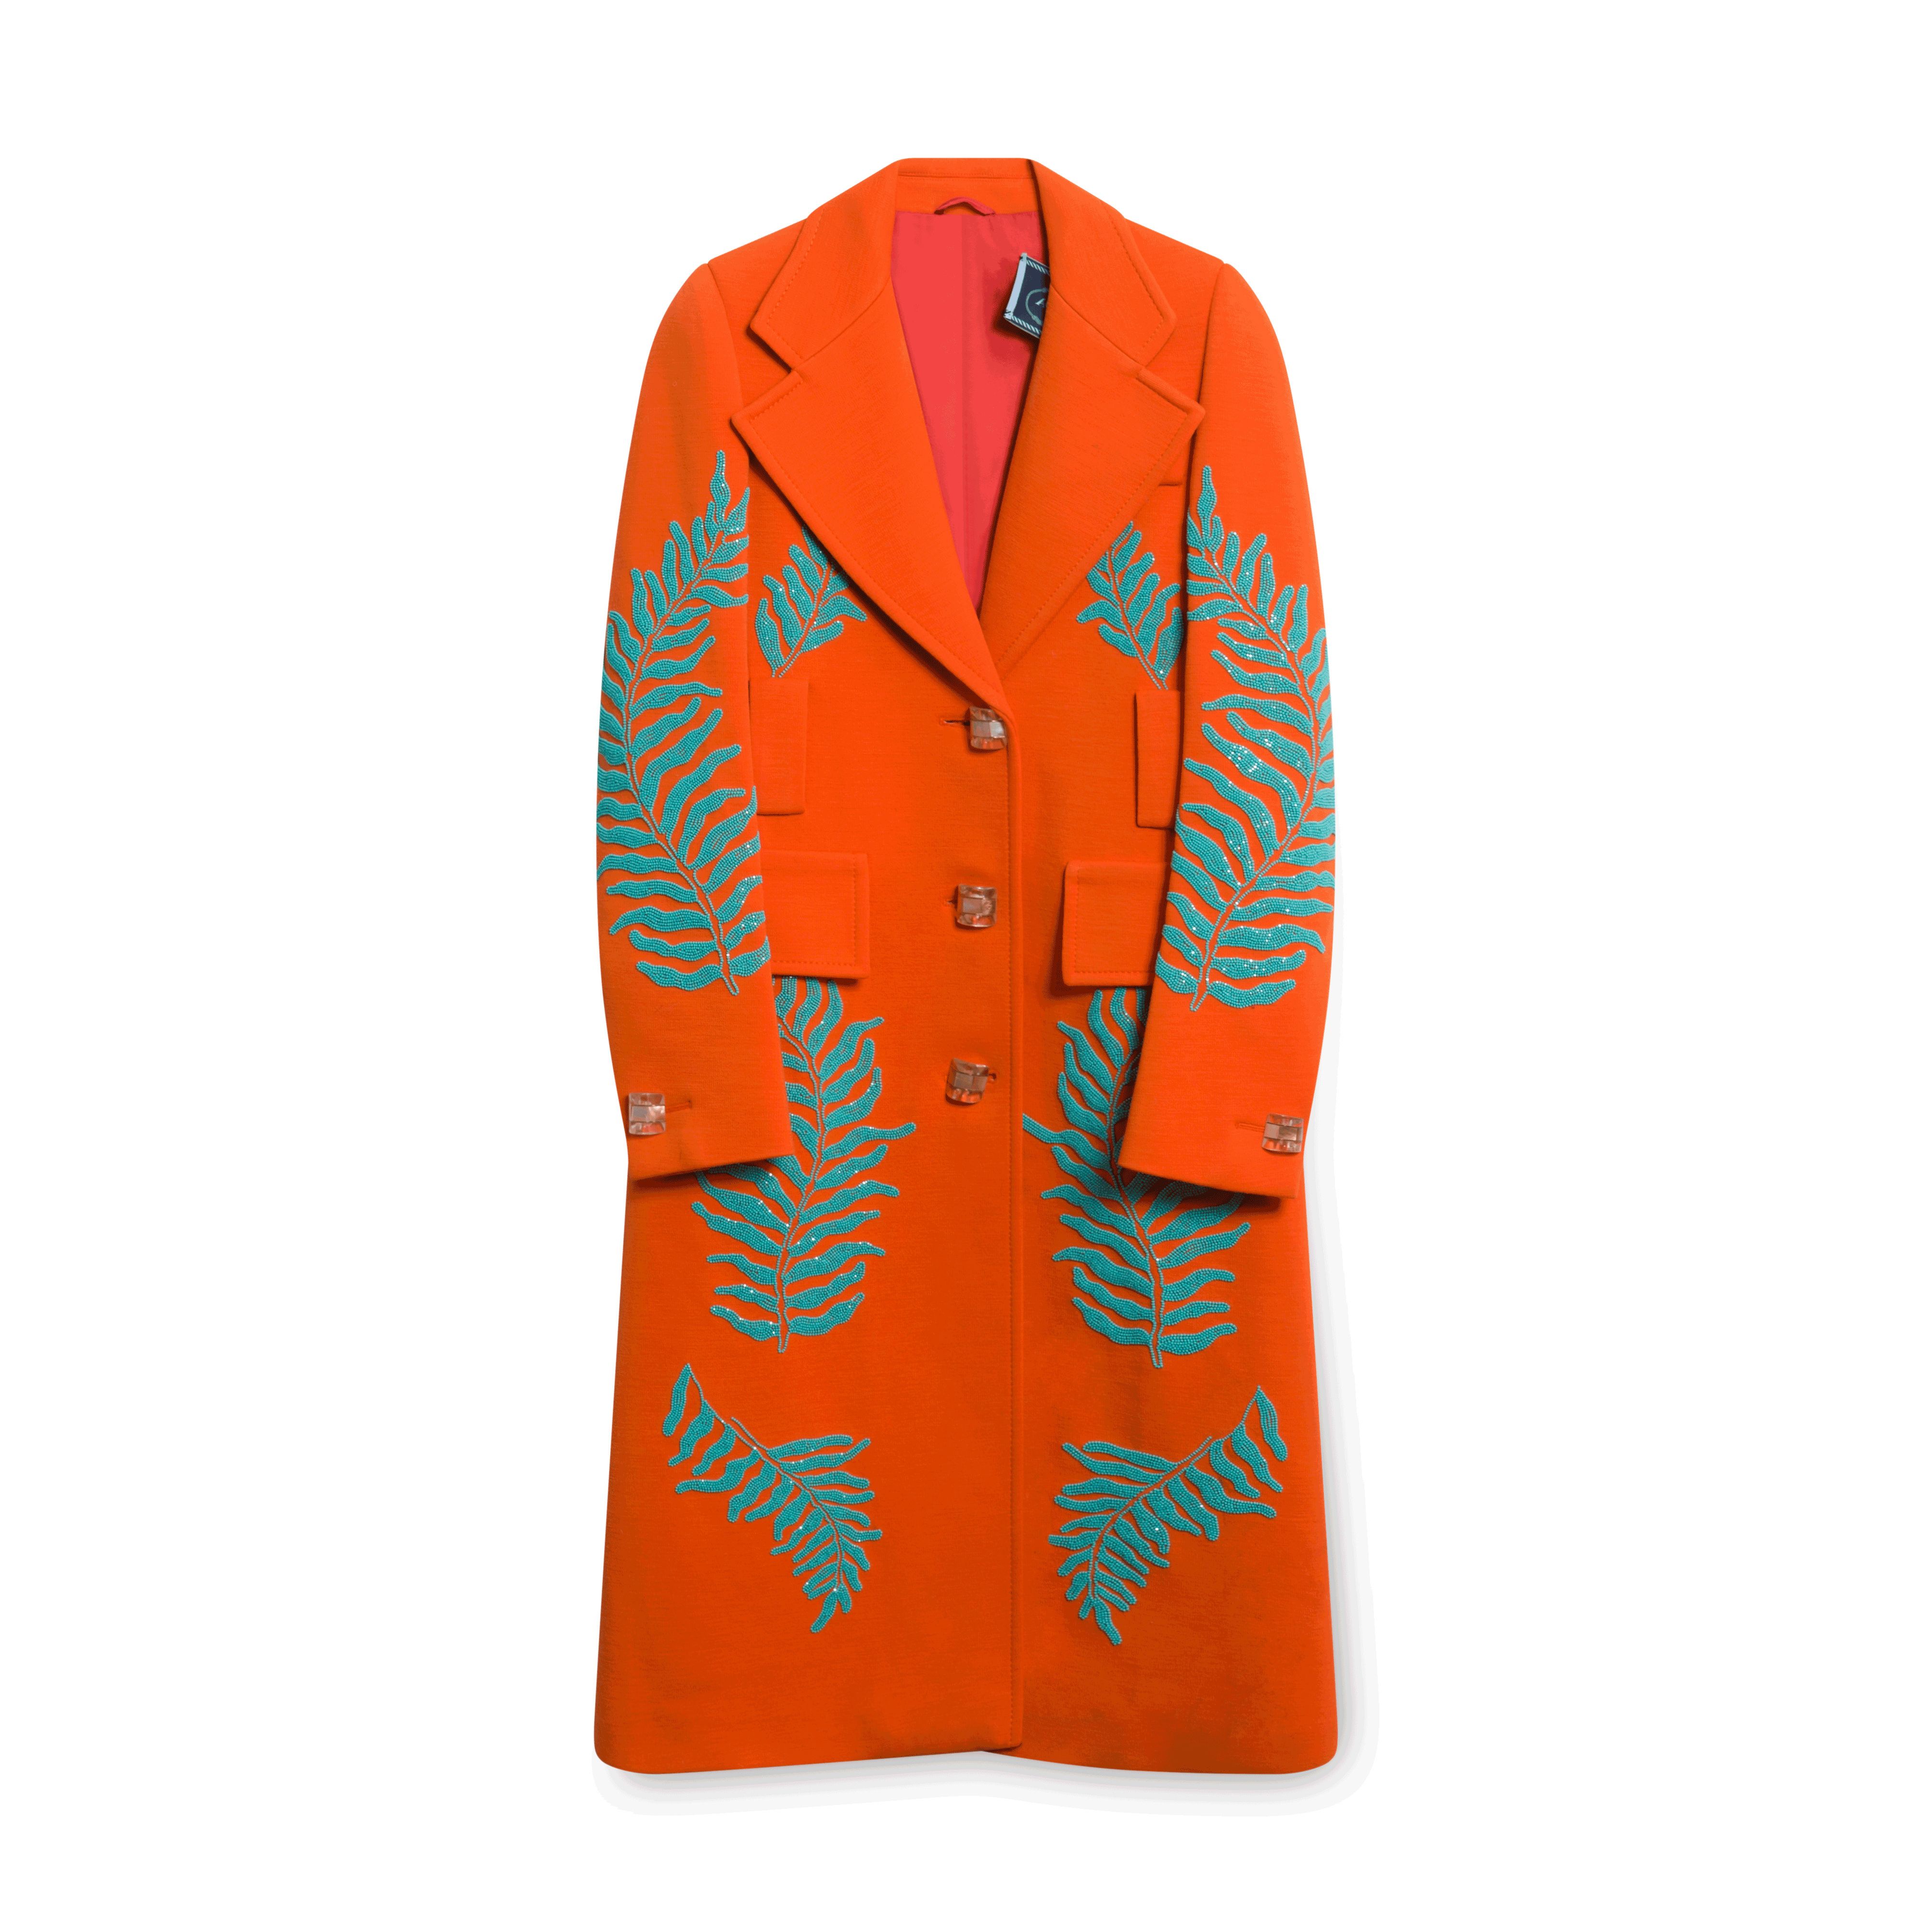 Prada Women's Orange Embellished Tailored Coat by Miso Dam | Basic